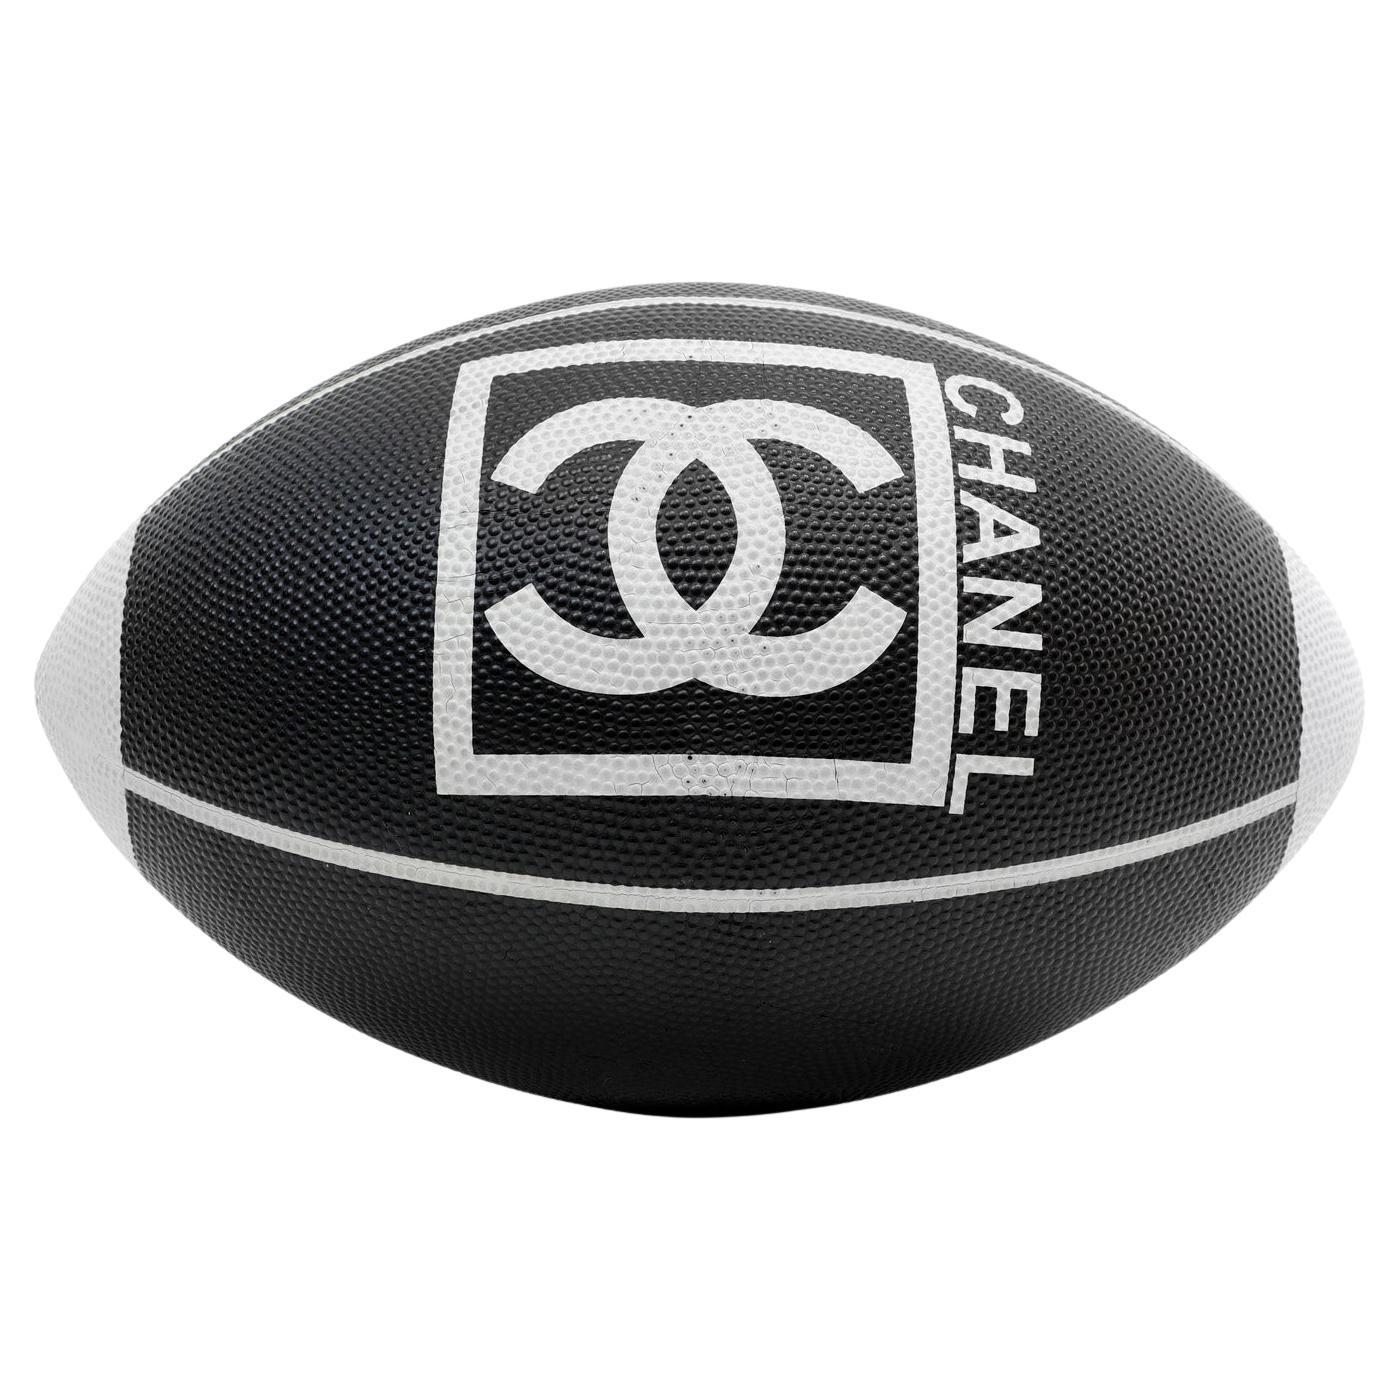 Schwarz-weiße Rugby-Fußballserie von Chanel